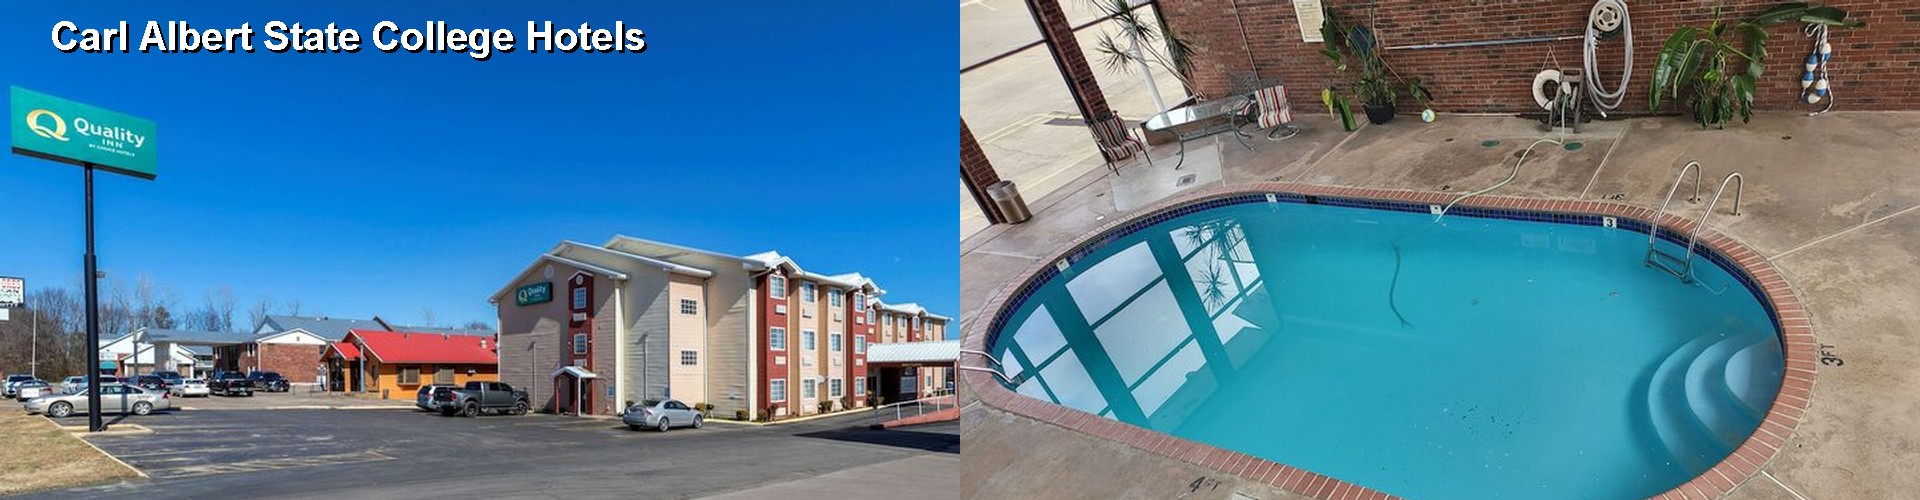 4 Best Hotels near Carl Albert State College